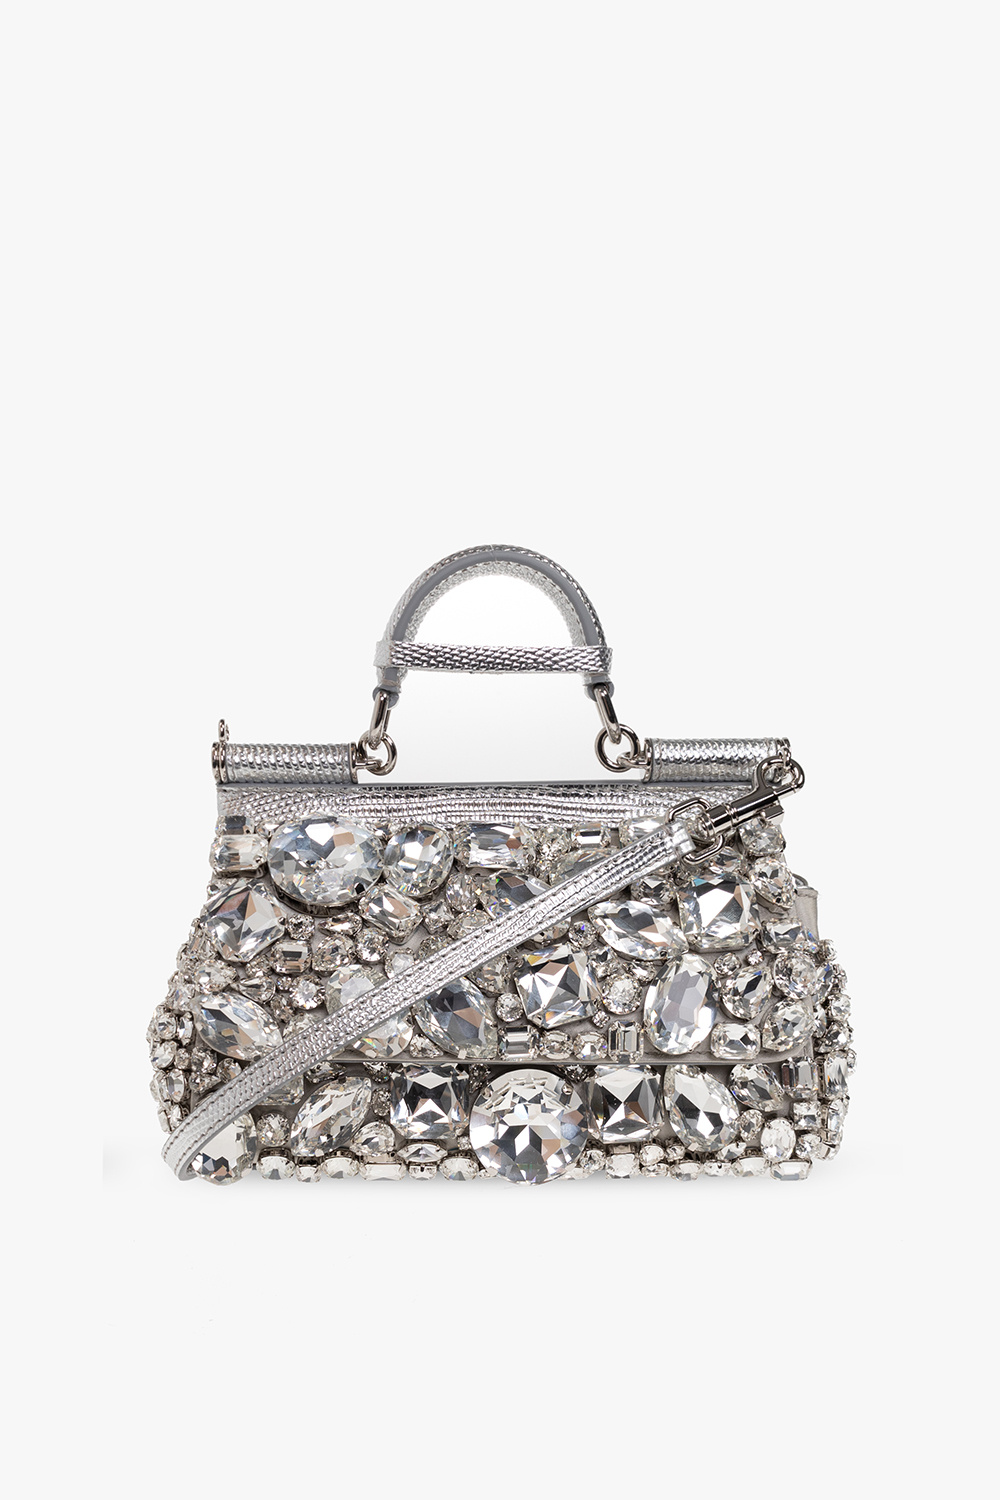 KIM DOLCE&GABBANA Small Sicily handbag in Silver | Dolce&Gabbana®